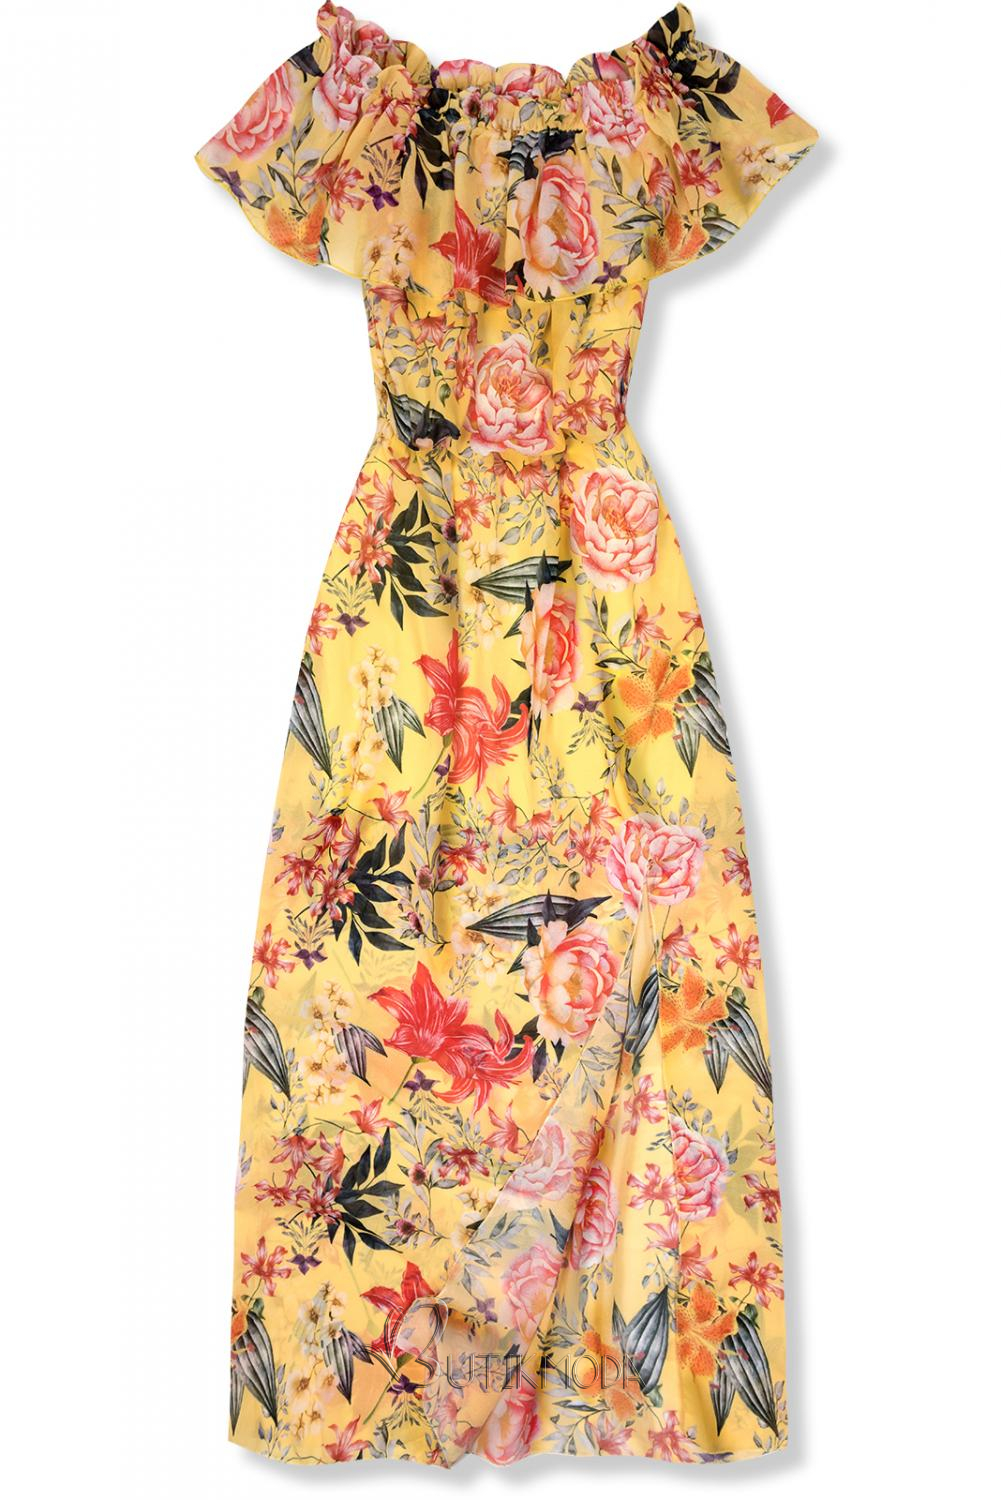 Langes Kleid mit Blumenprint gelb